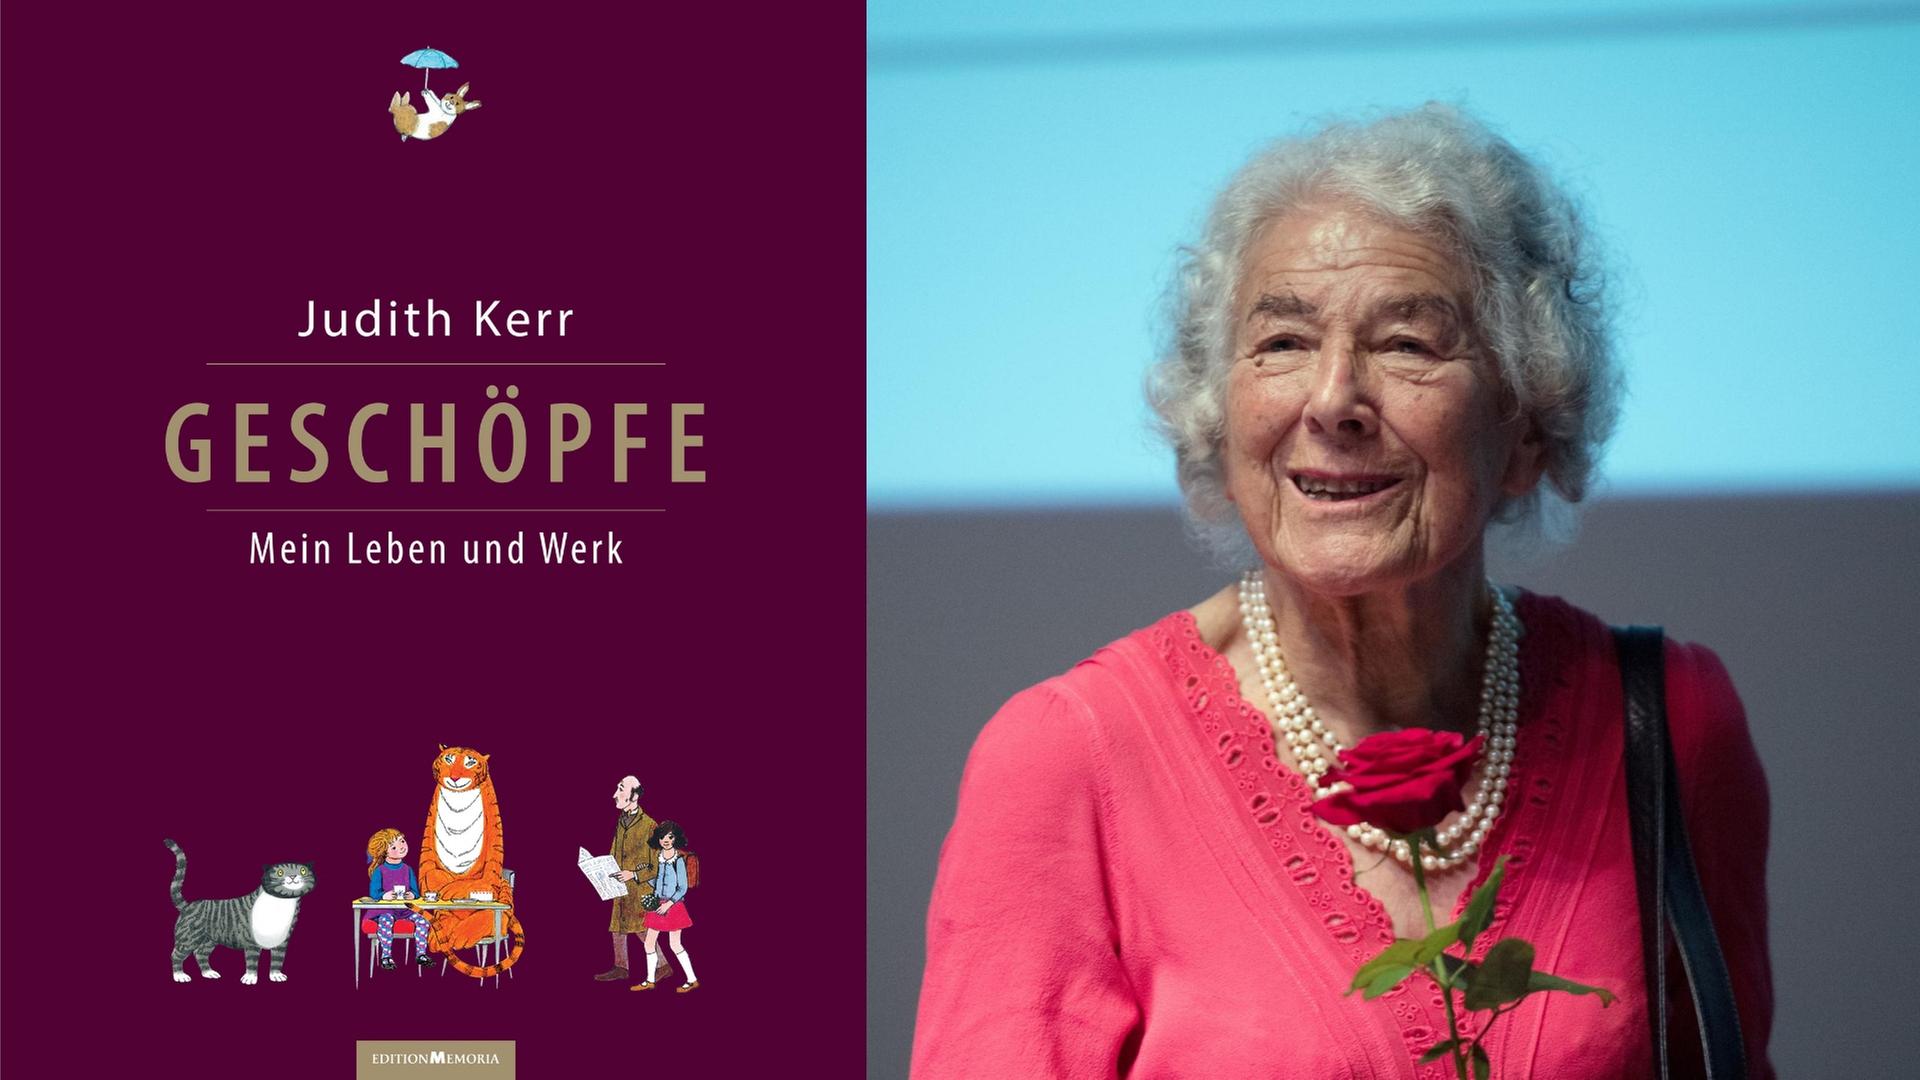 Geschöpfe Mein Leben und Werk Das Buch erscheint anlässlich des 95.Geburtstags von Judith Kerr am 14.Juni 